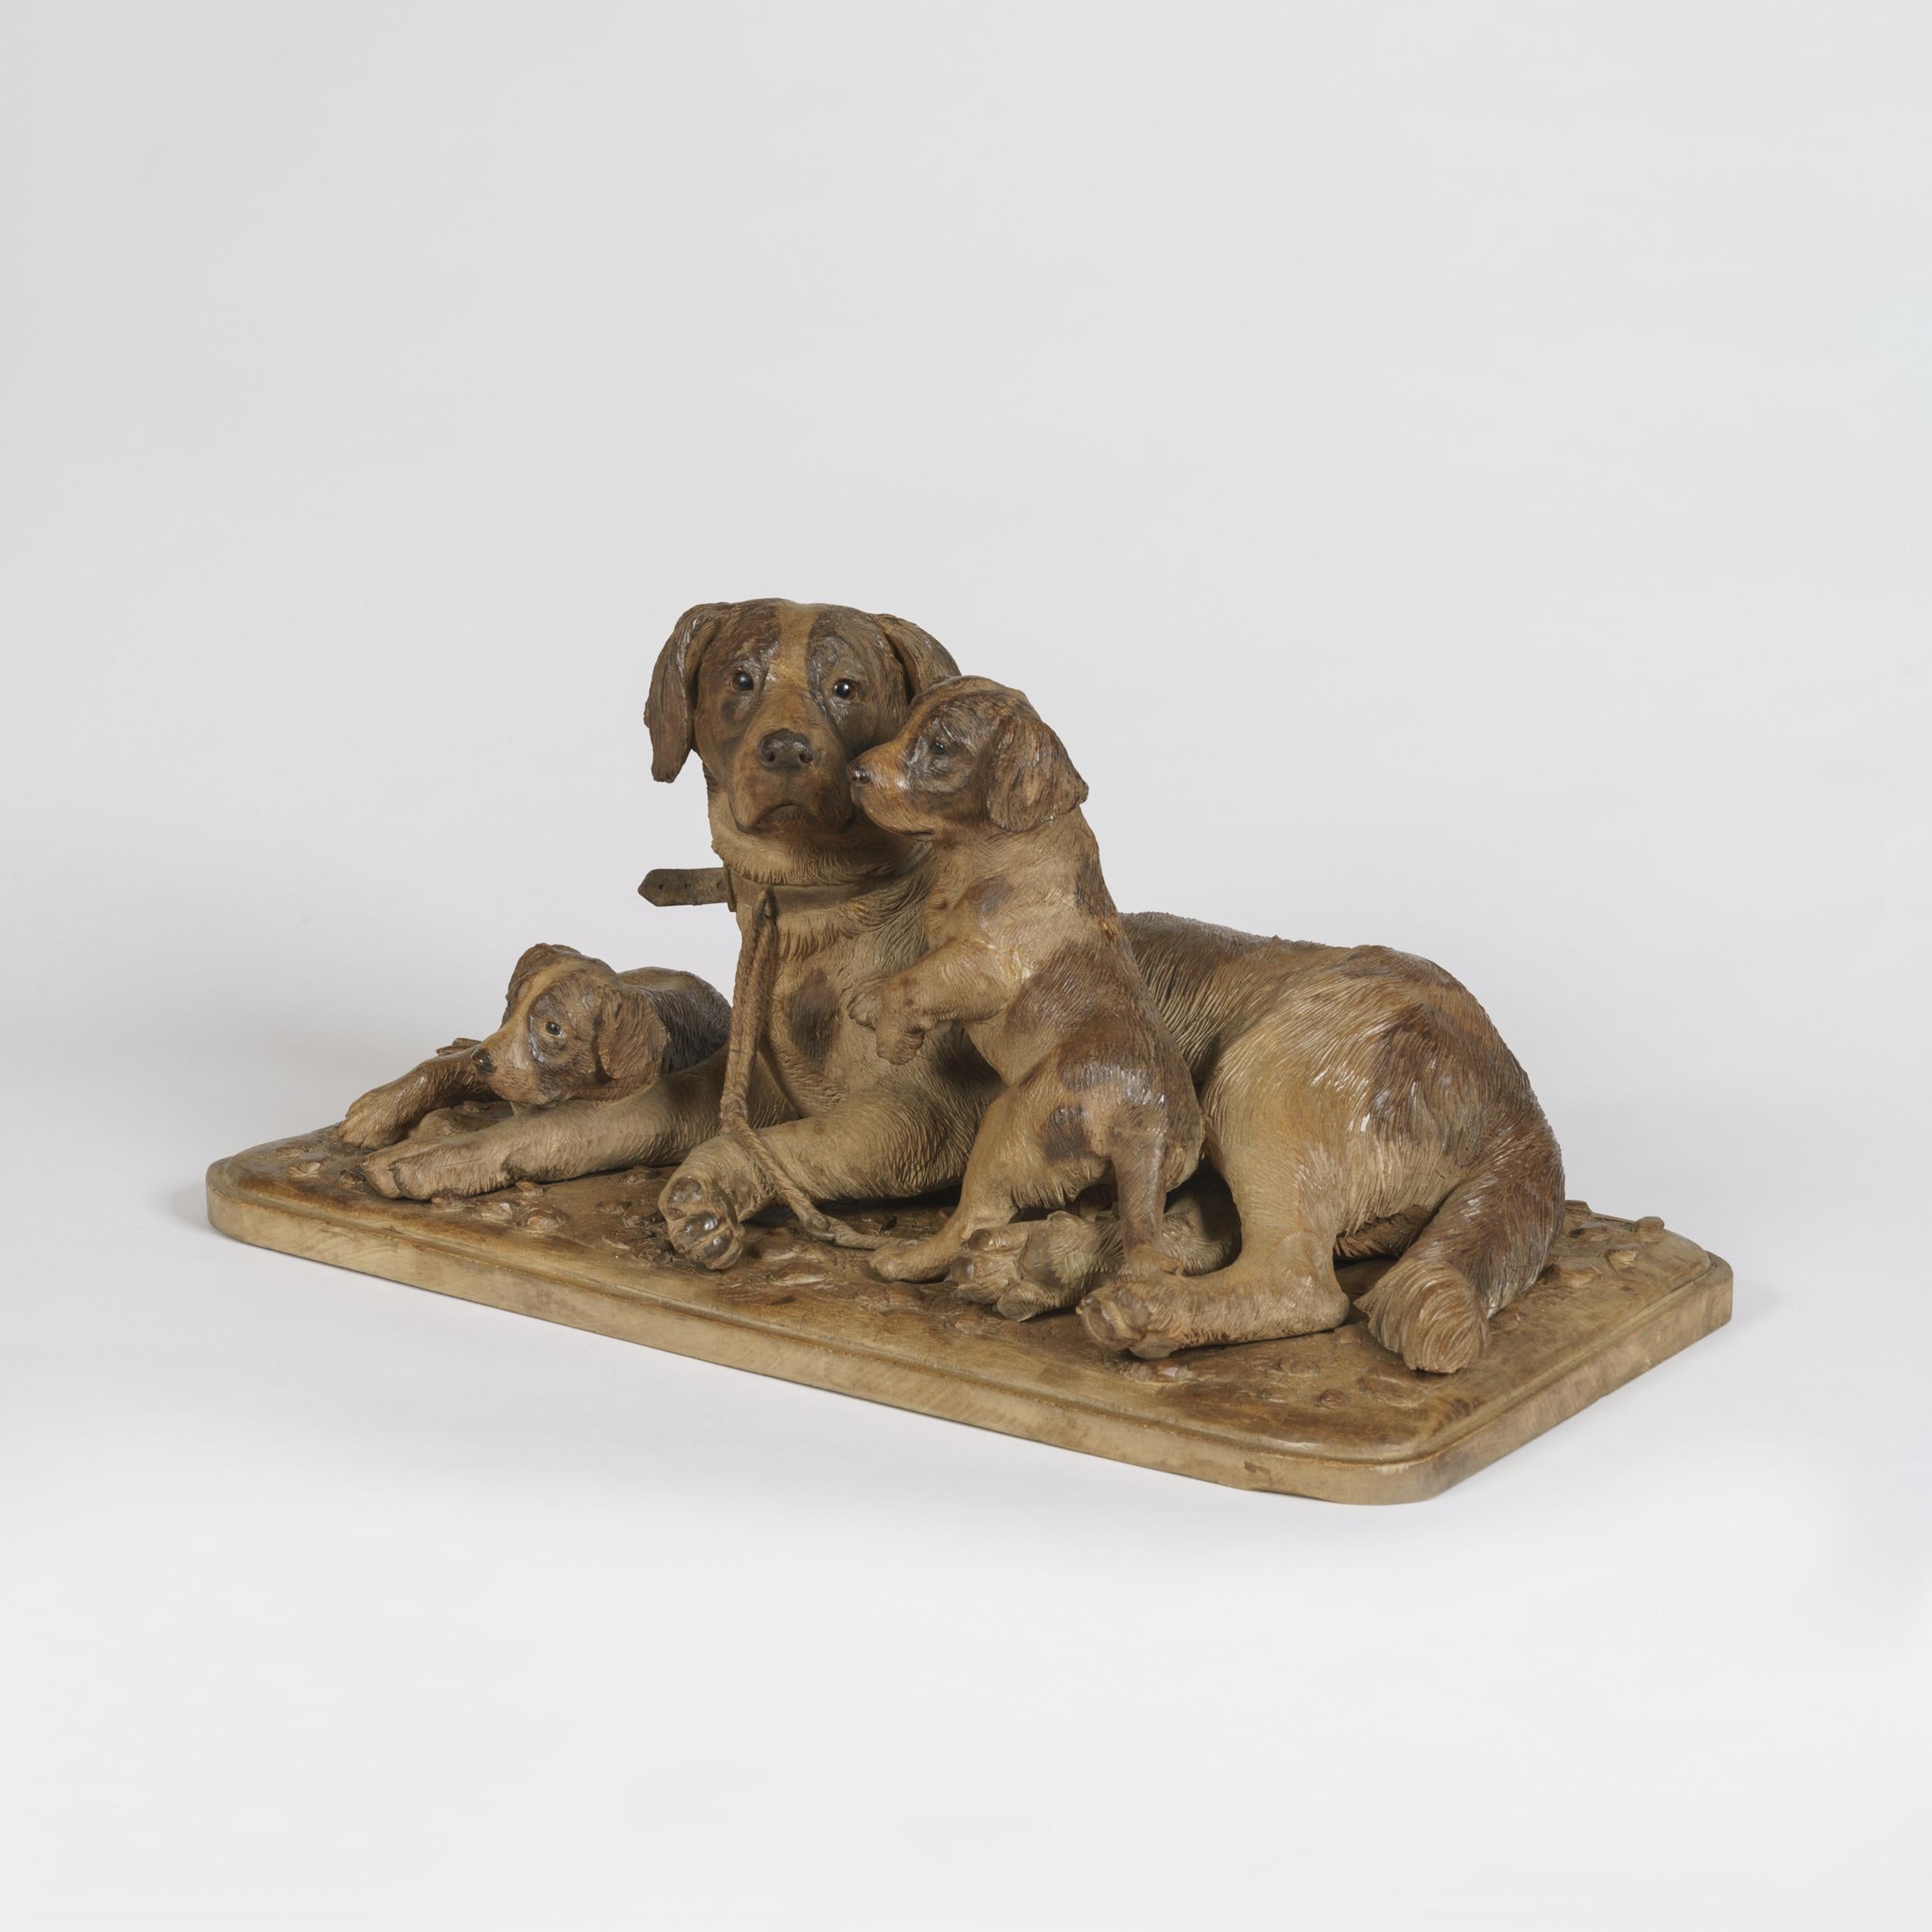 Groupe de chiens sculptés de la Forêt-Noire
Construite en bois de tilleul sculpté et teinté de manière naturaliste, sur une base rectangulaire aux angles arrondis, la chienne couchant et s'occupant de ses deux petits, tous munis d'yeux en verre